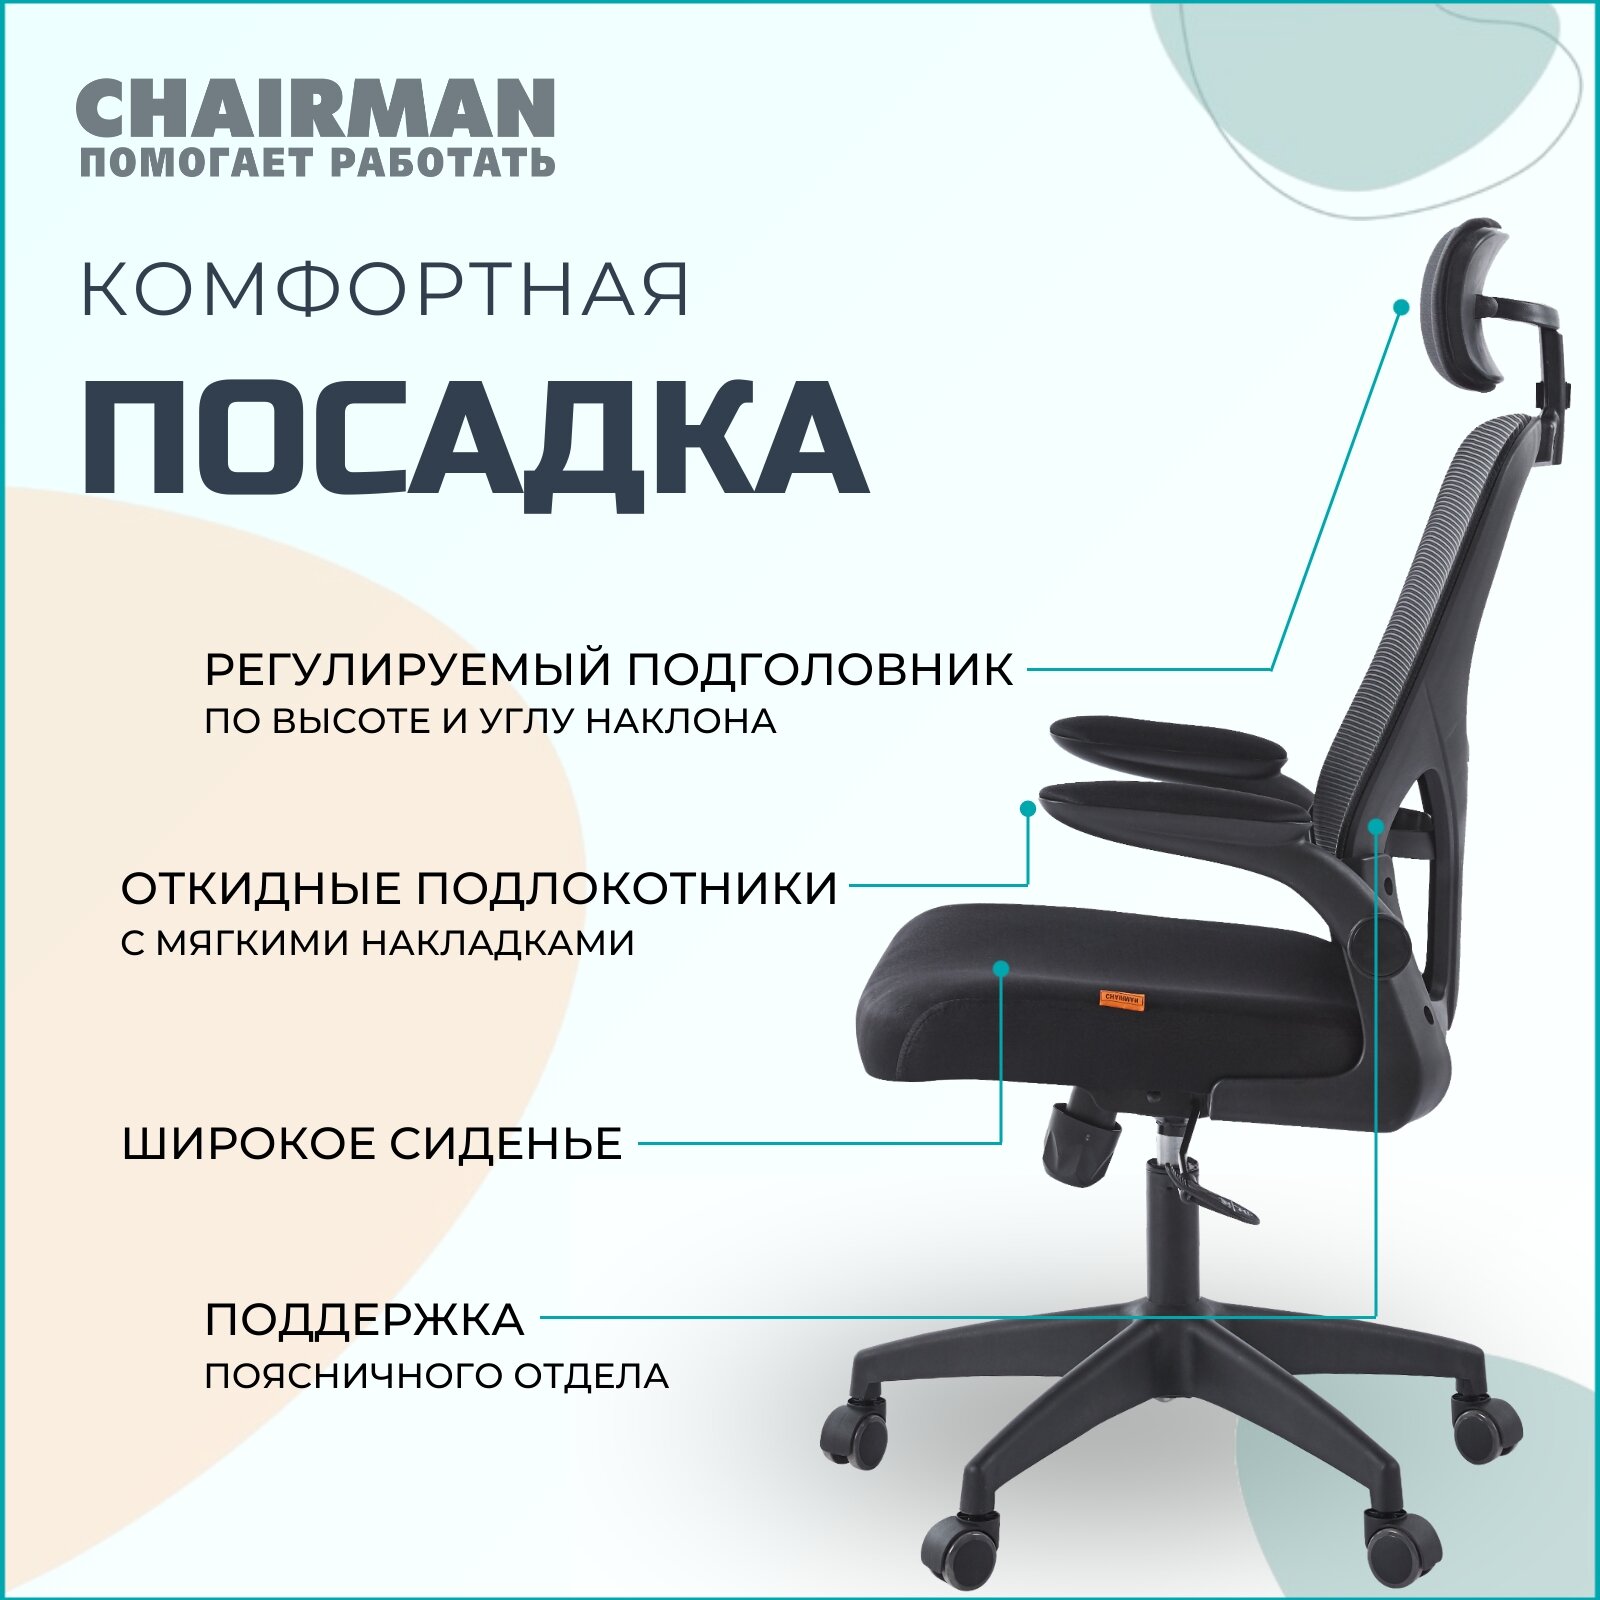 Офисное кресло, кресло руководителя CHAIRMAN CH633, ткань/сетка, черный